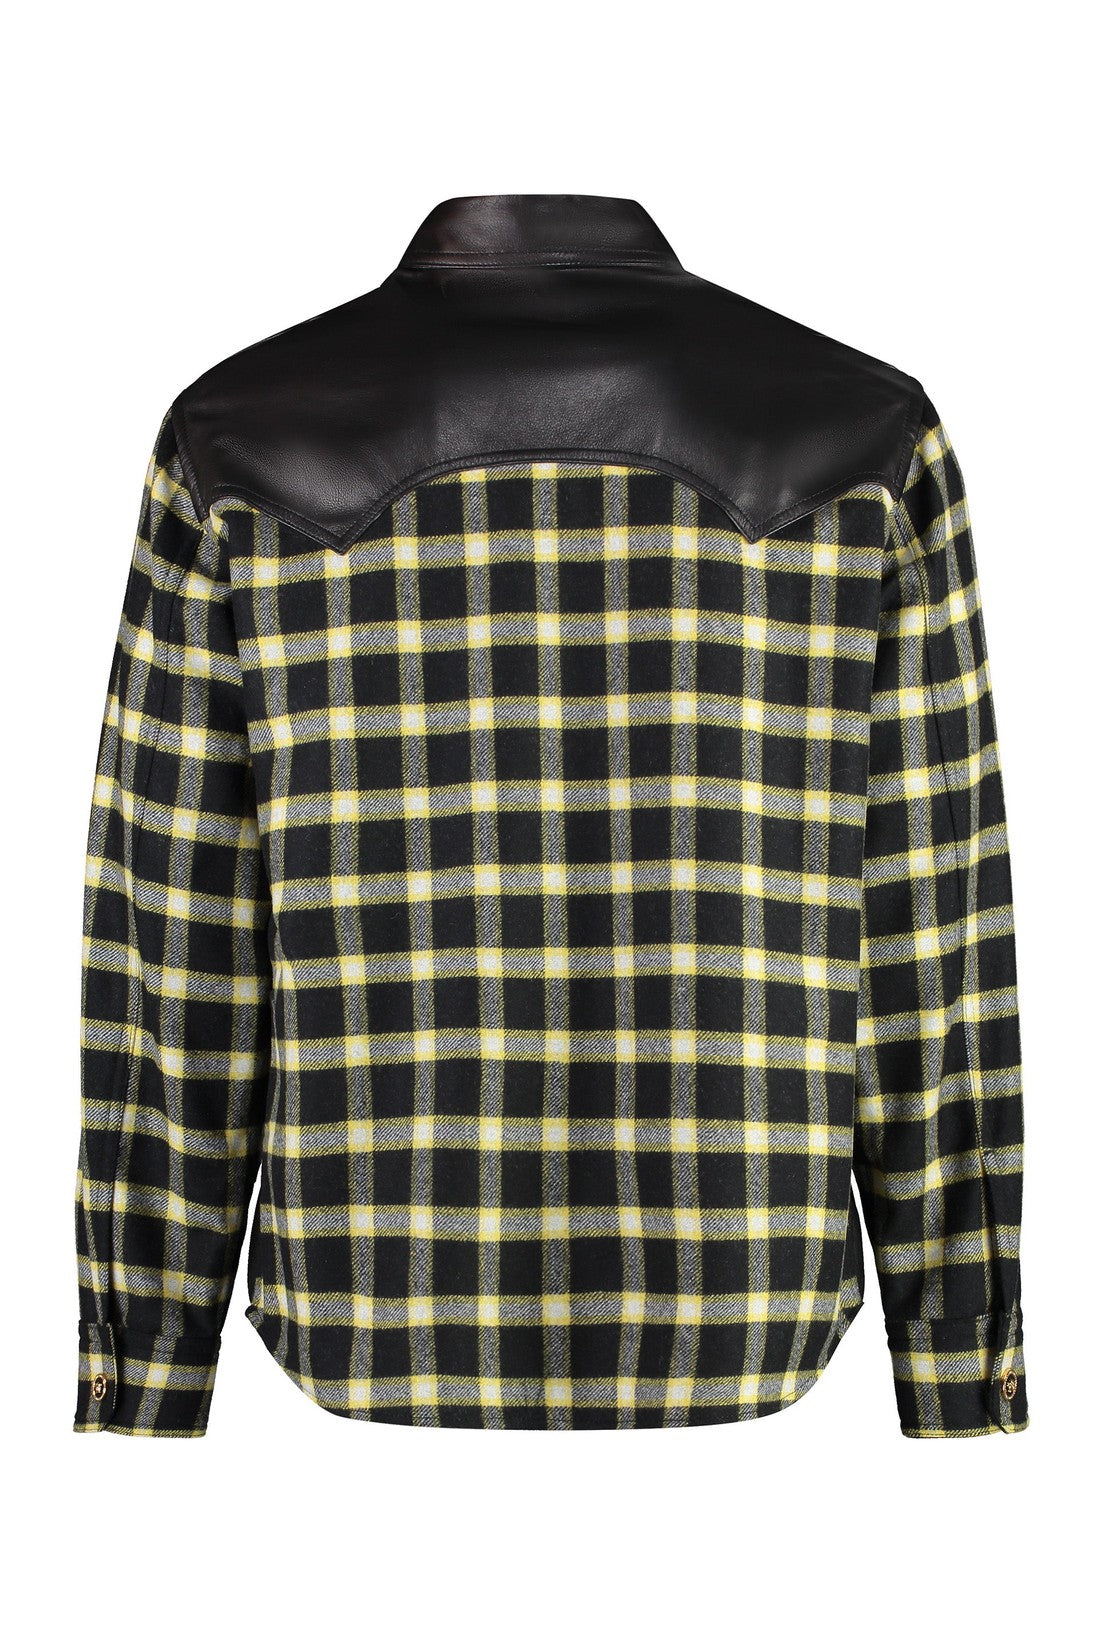 Versace-OUTLET-SALE-Leather shirt-ARCHIVIST